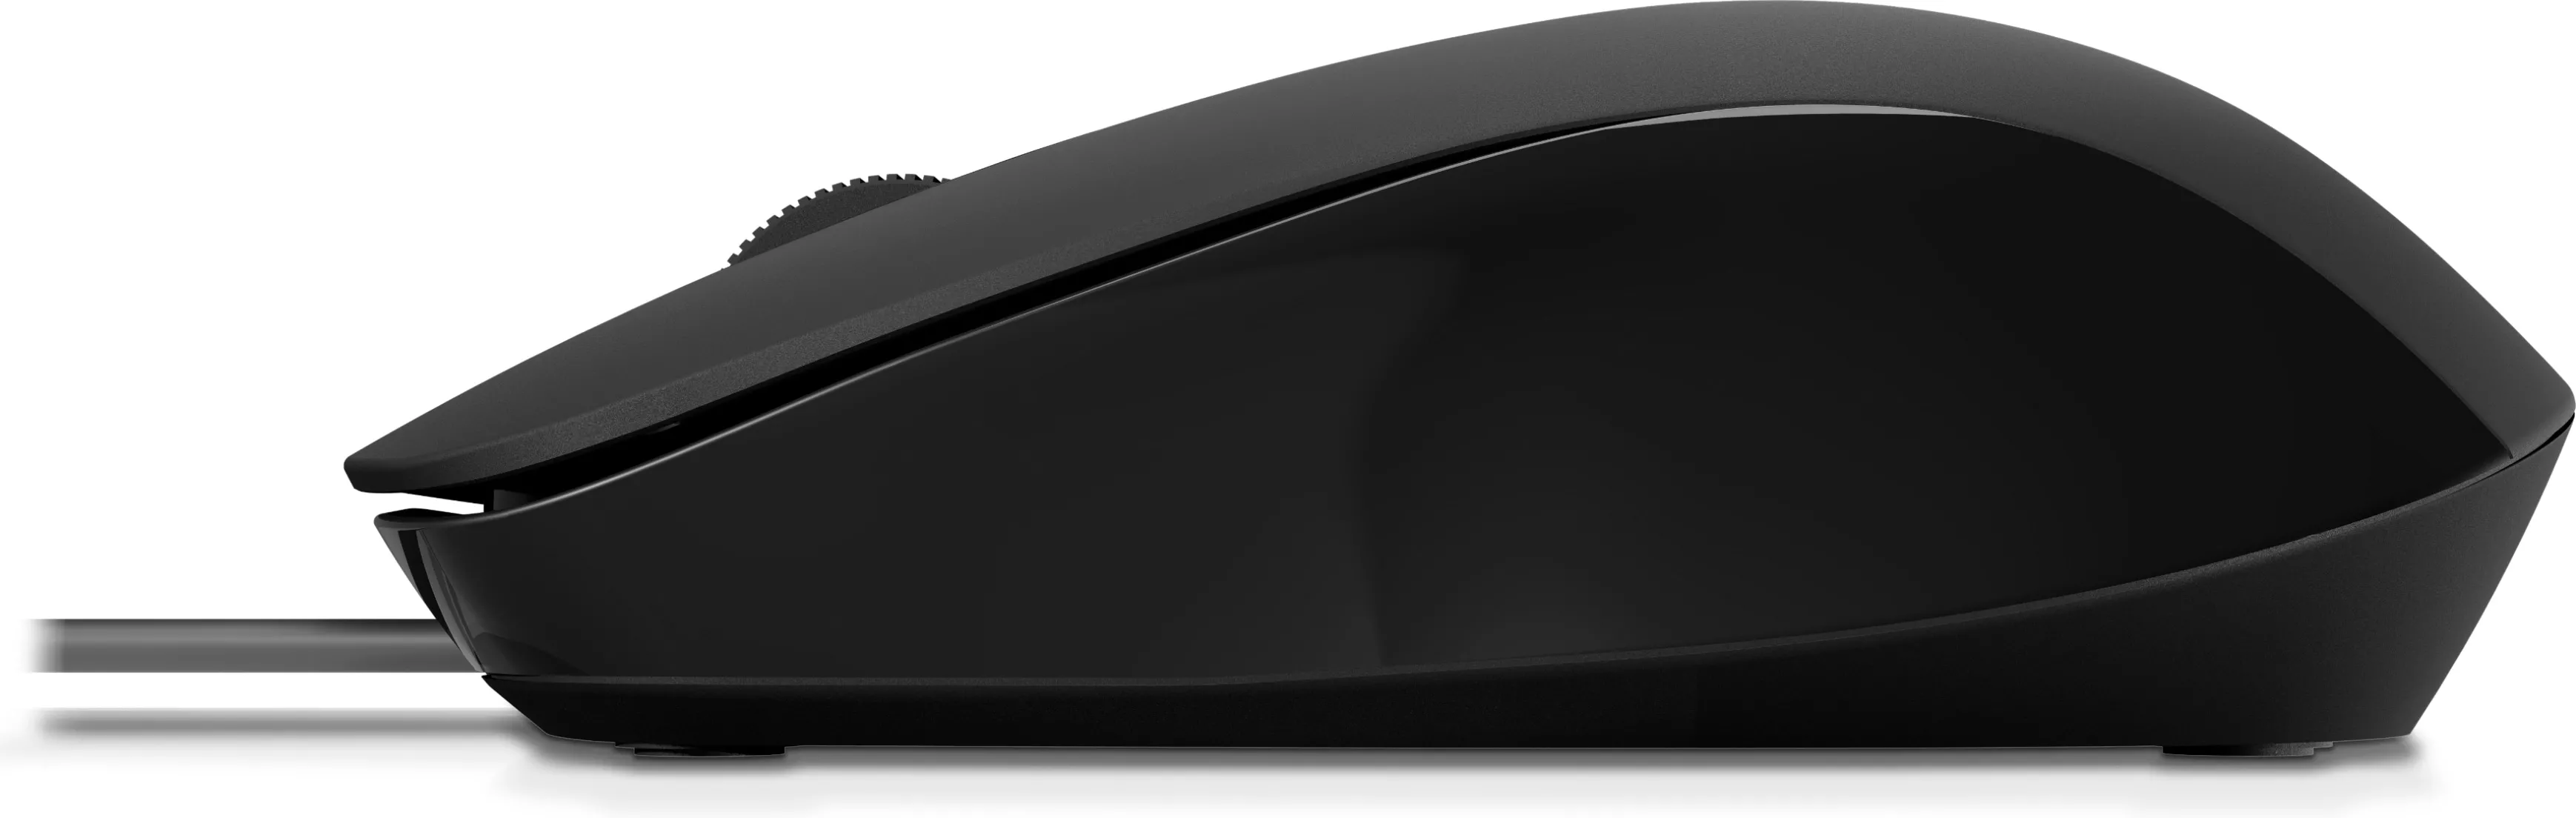 Vente HP 150 Wired Mouse HP au meilleur prix - visuel 6